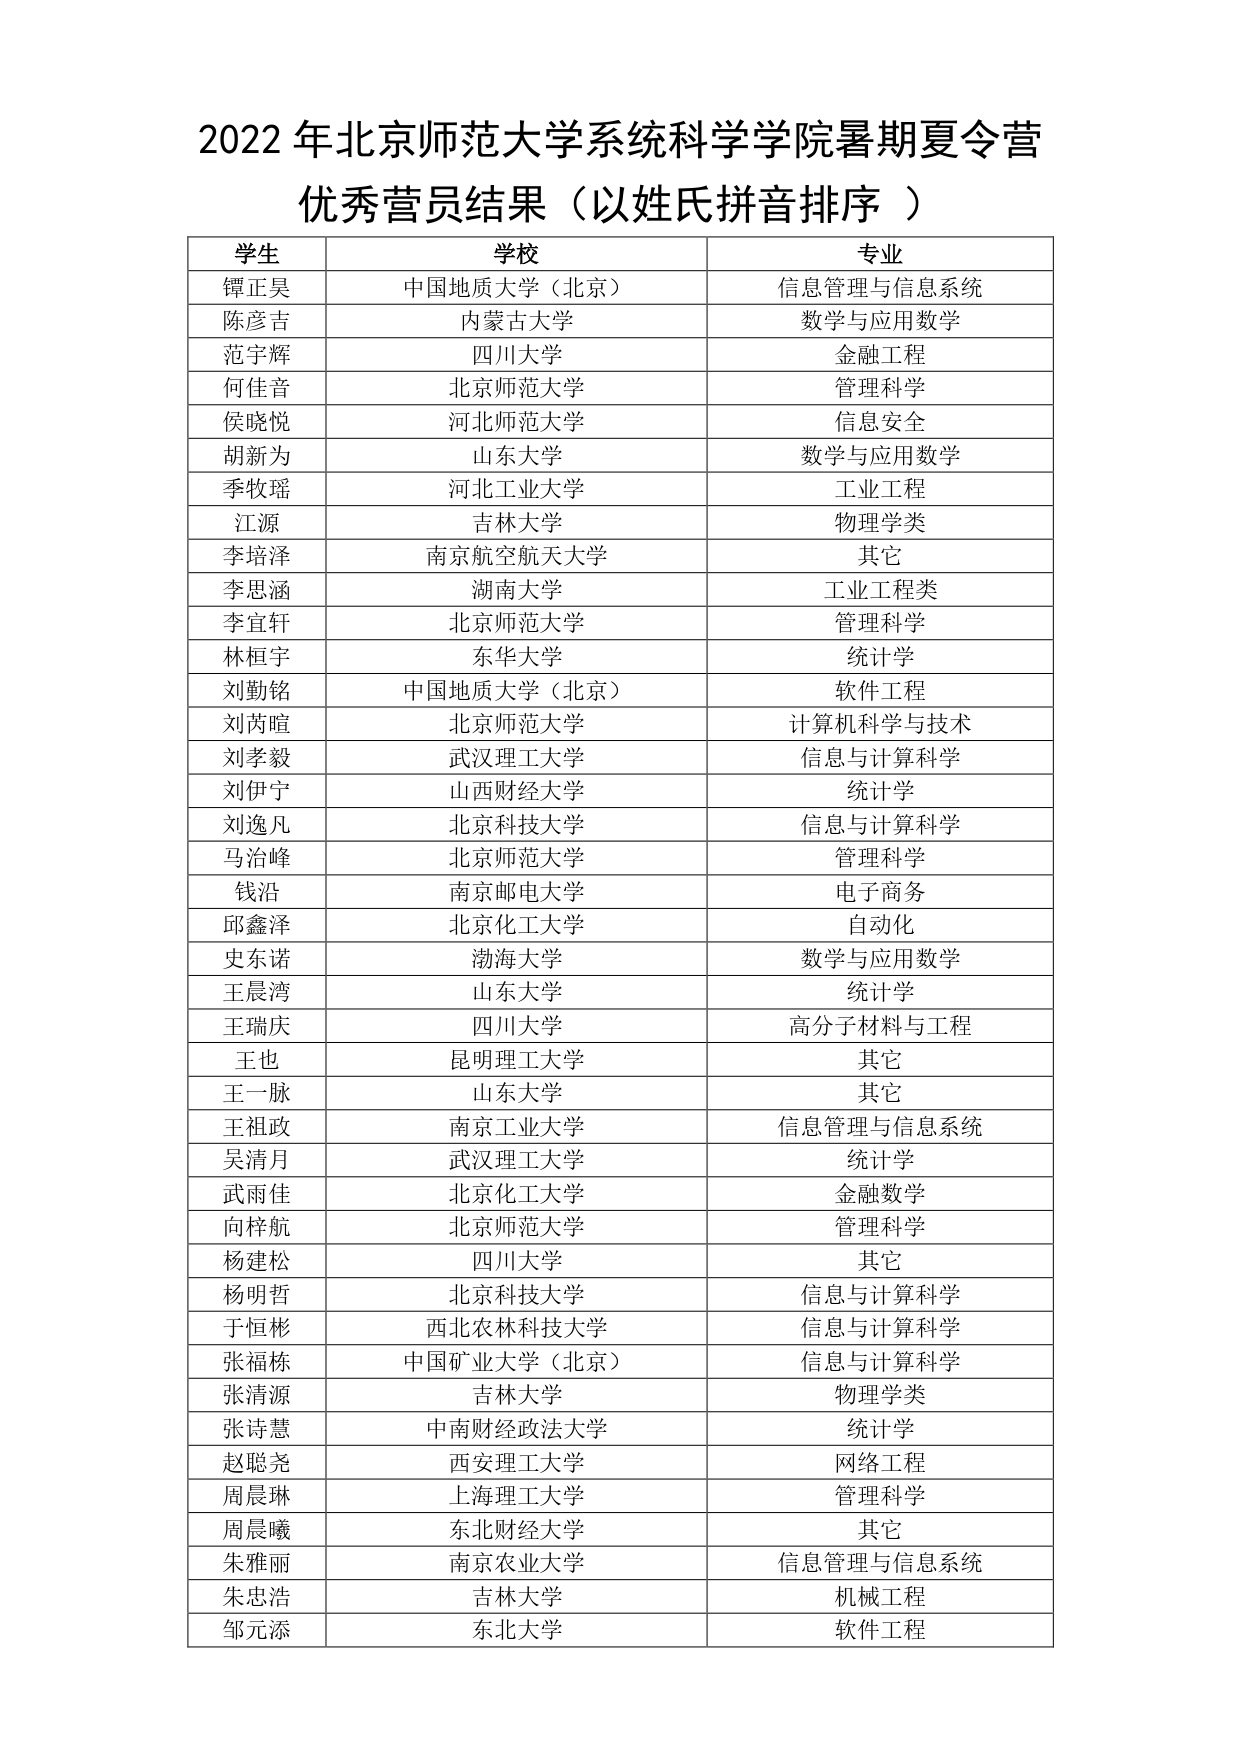 2022年北京师范大学系统科学学院暑期夏令营录取结果名单_page-0001.jpg